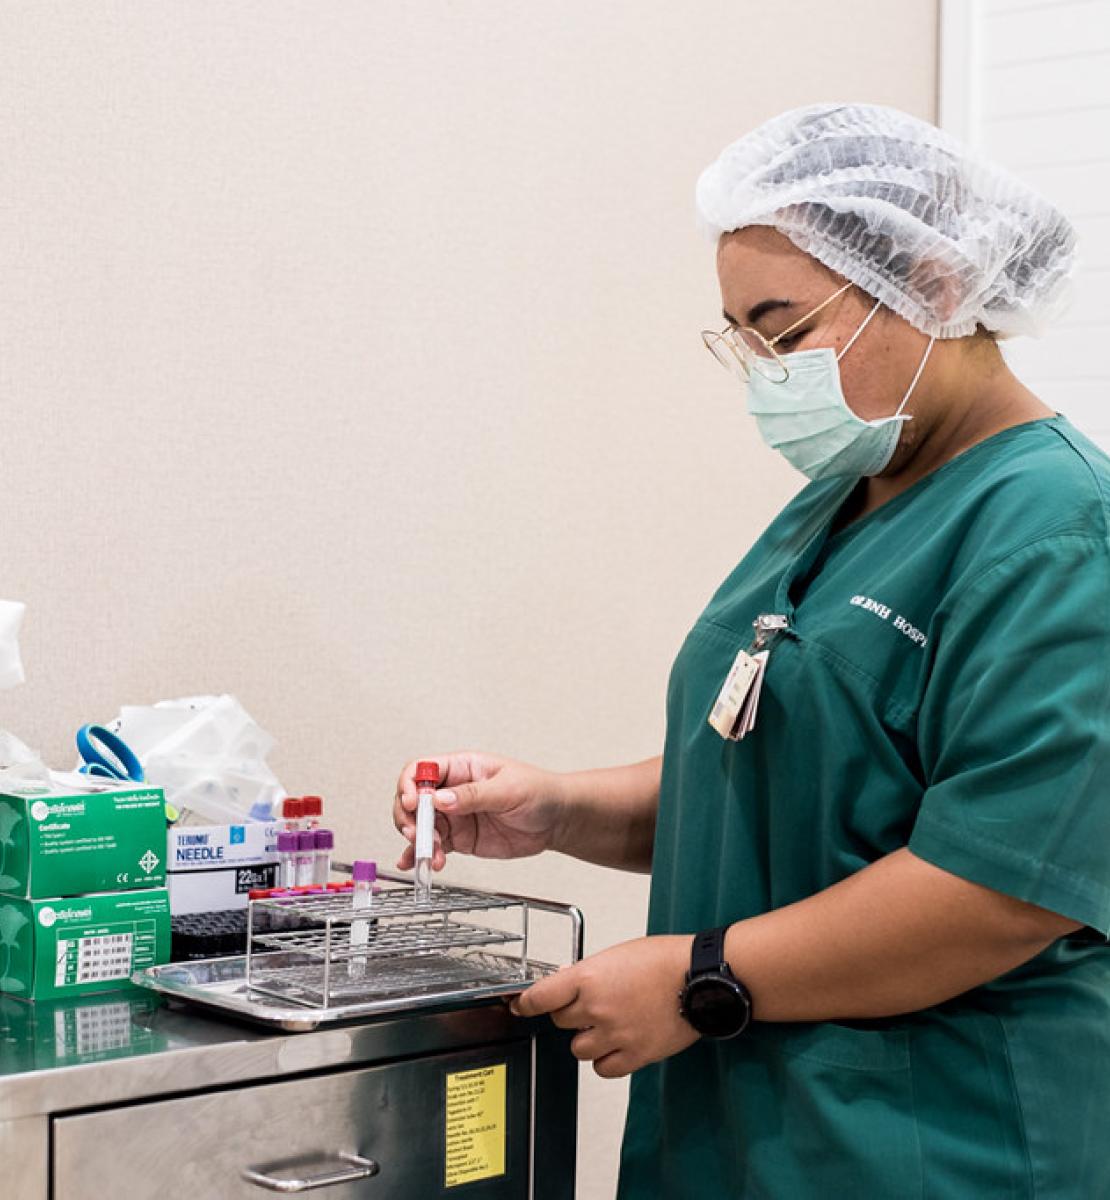 ممرضة ترتدي معدات الوقاية الشخصية وهي تجهز مواد الفحص الطبي.